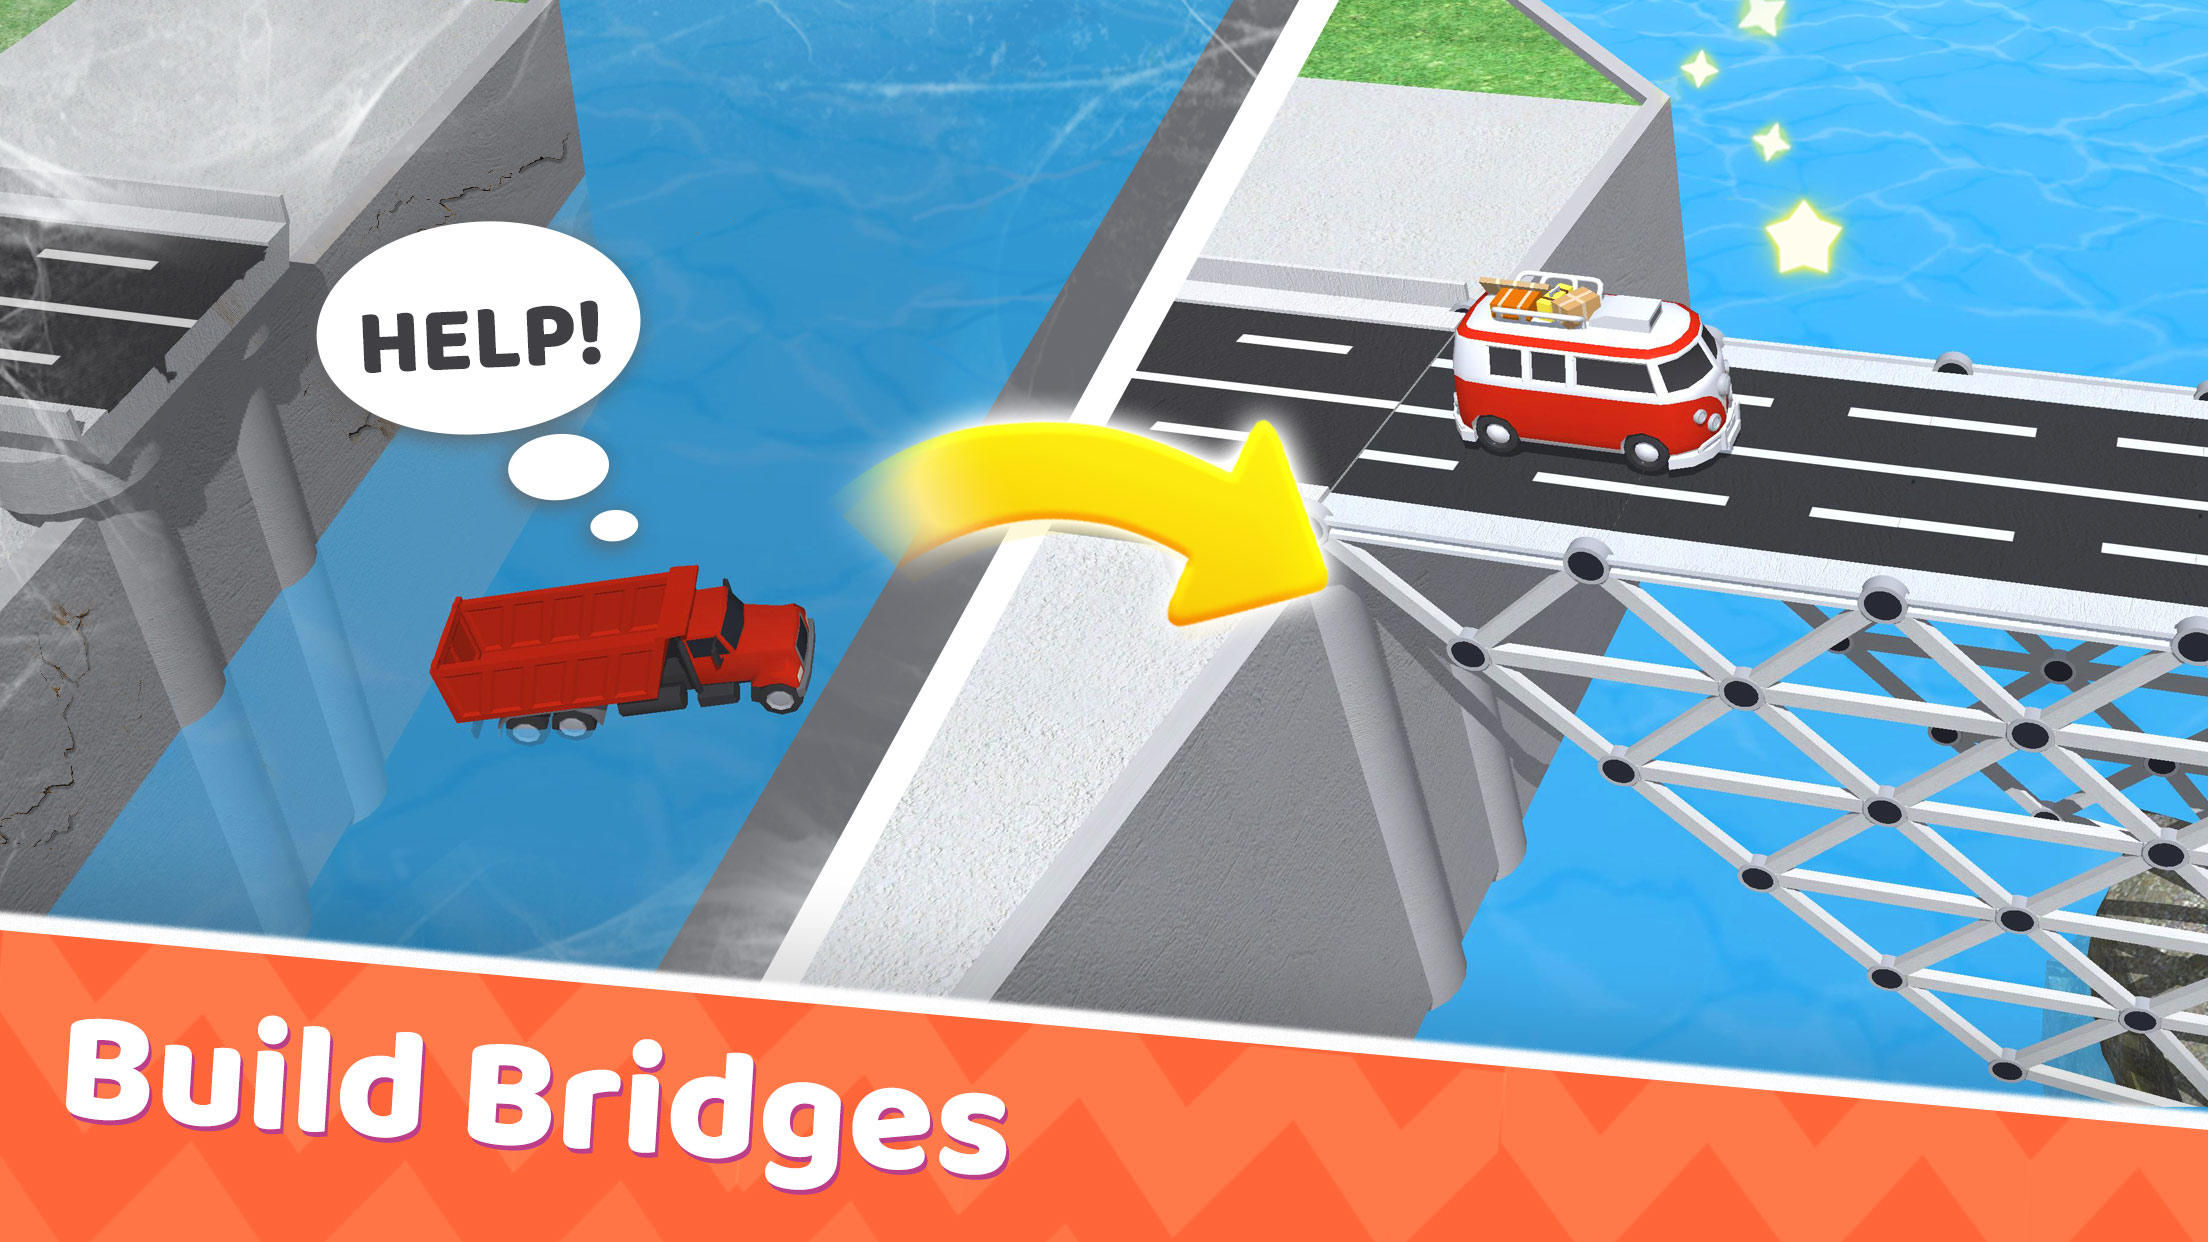 Screenshot 1 of Bridge Building - 橋を作るゲーム 2.000